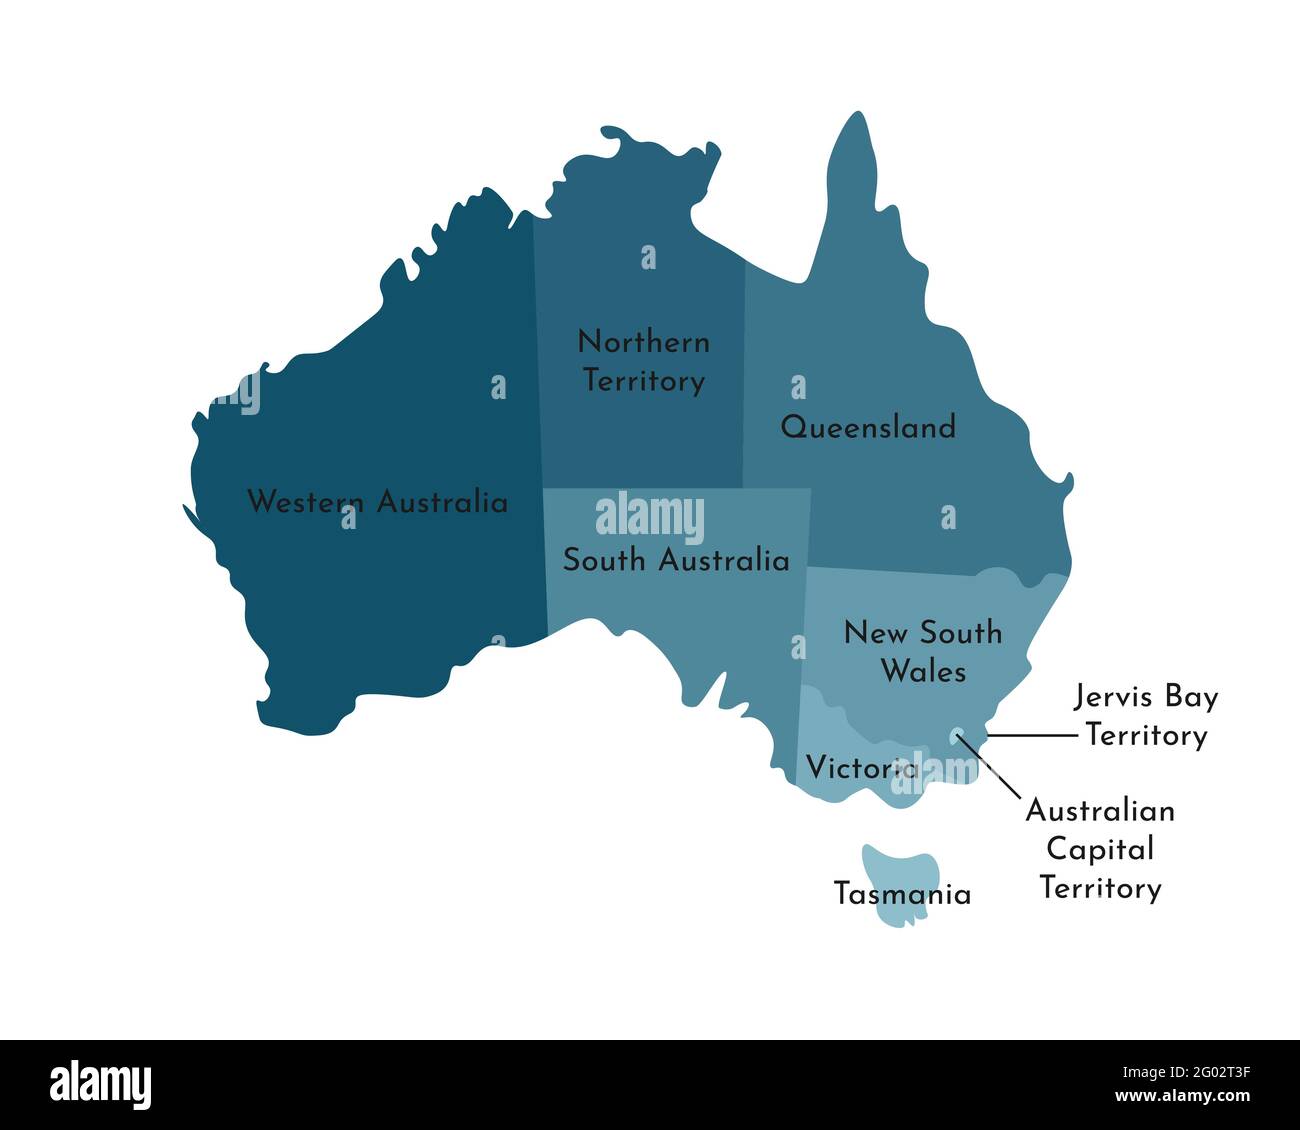 Illustration vectorielle isolée de la carte administrative simplifiée de l'Australie. Frontières et noms des régions, y compris seulement les territoires les plus proches. Couleur Illustration de Vecteur